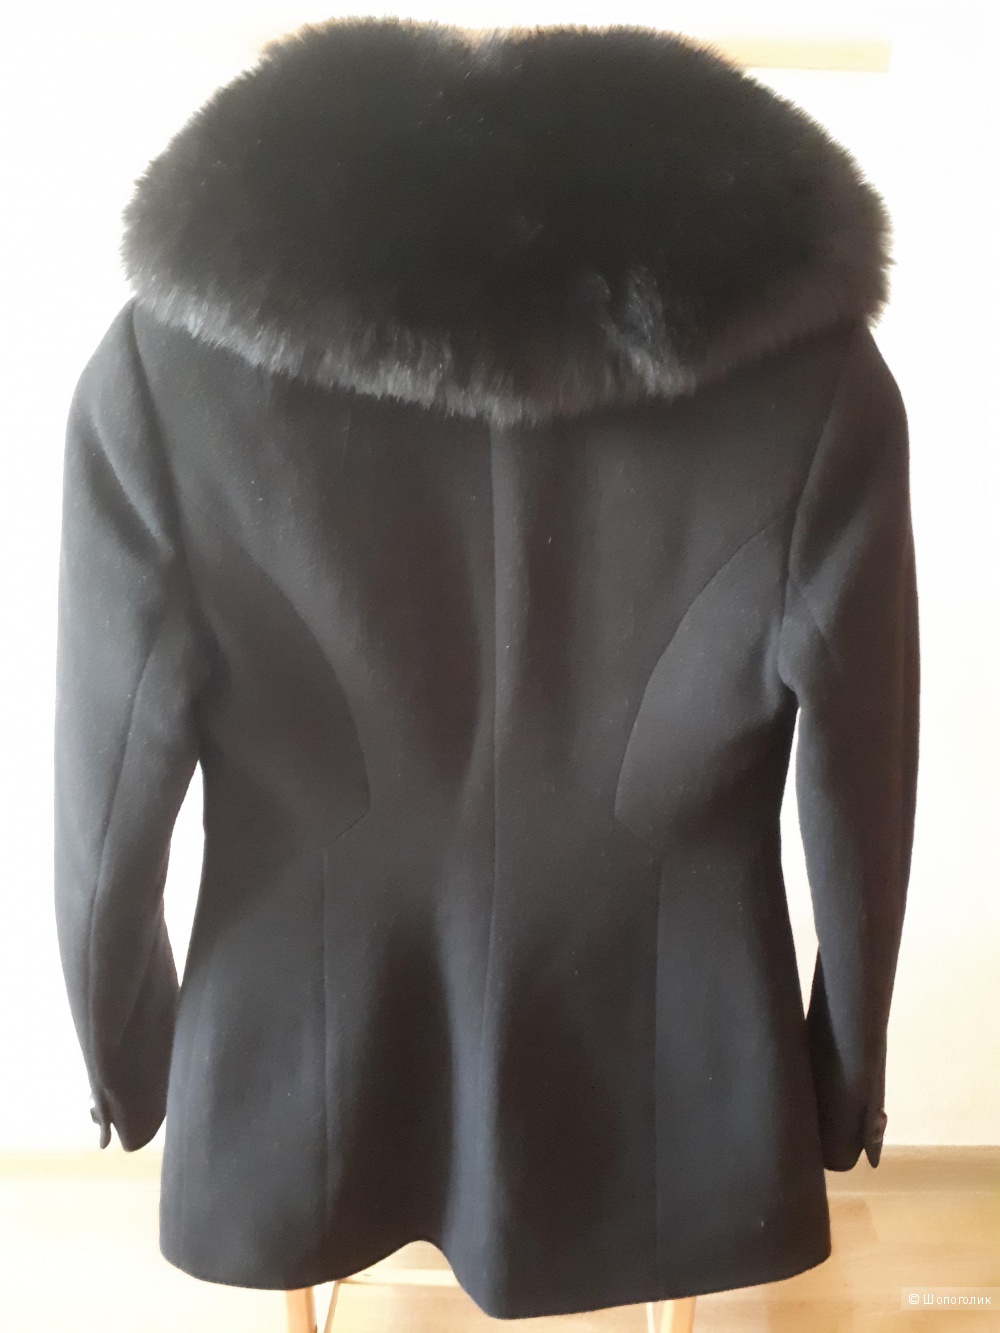 Пальто Dekka, размер 42